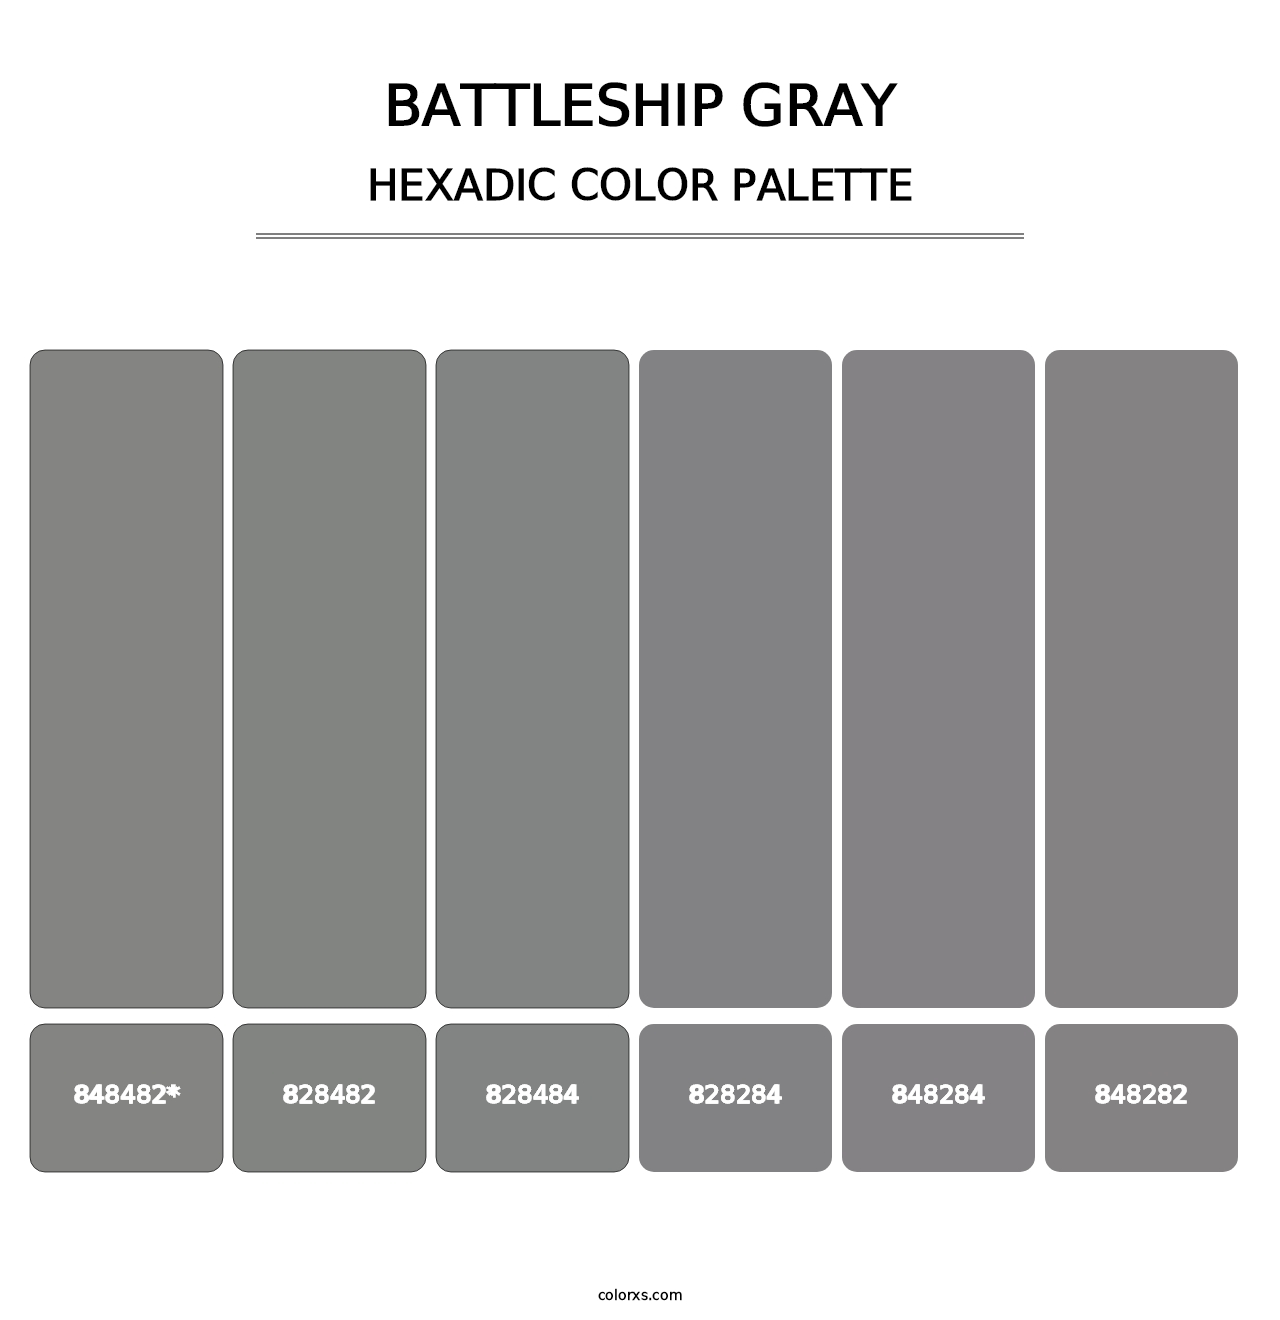 Battleship Gray - Hexadic Color Palette